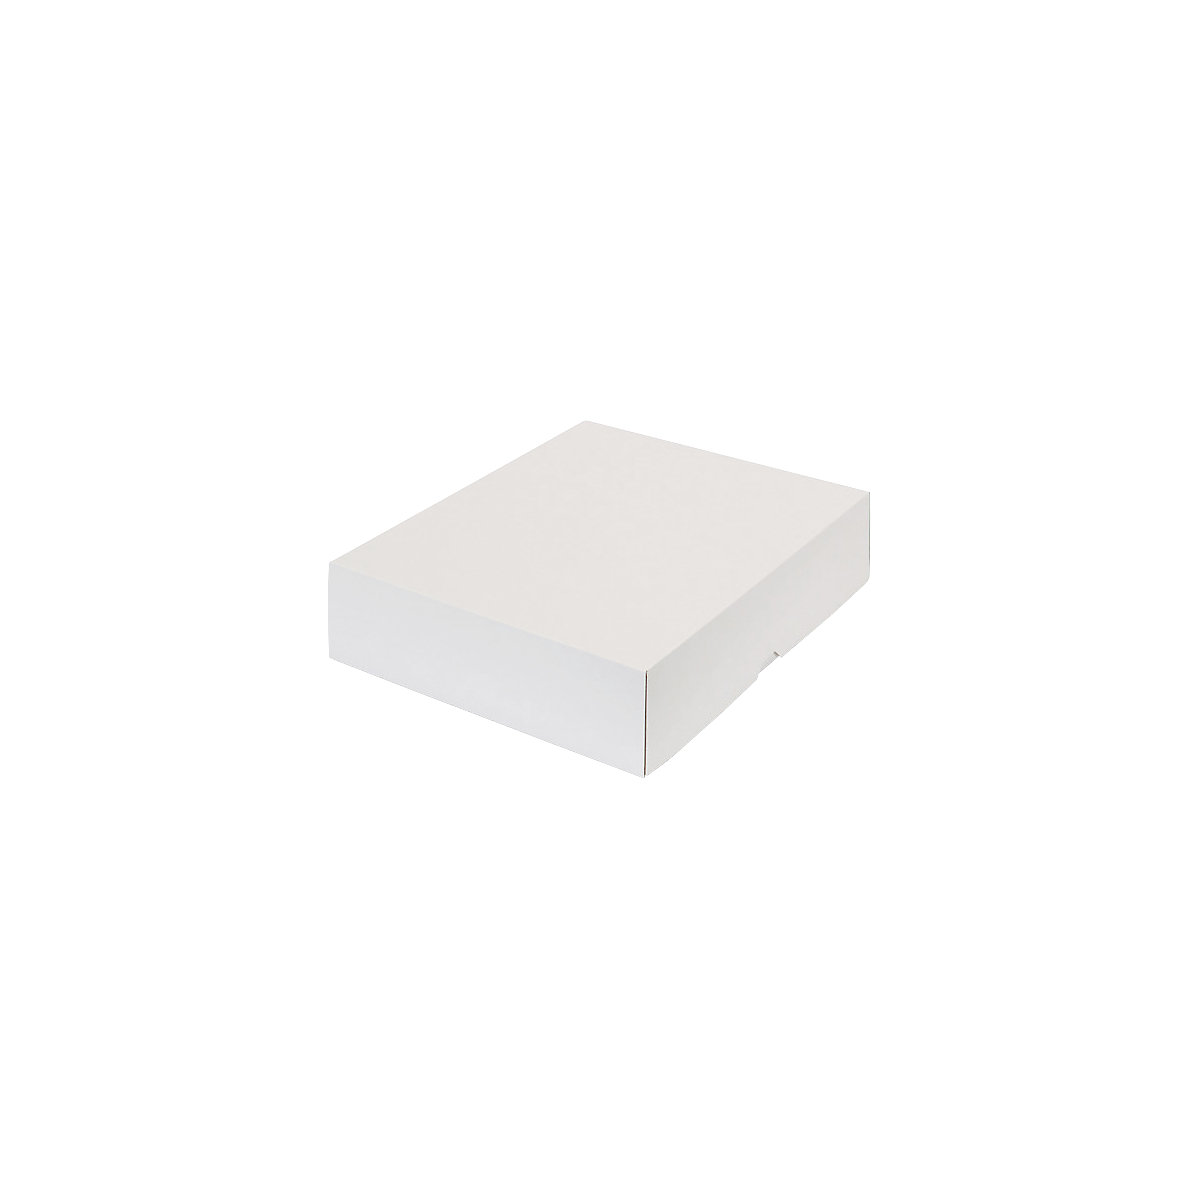 Stülpdeckelkarton, zweiteilig, Innenmaße 355 x 275 x 80 mm, B4, weiß, ab 120 Stk-30